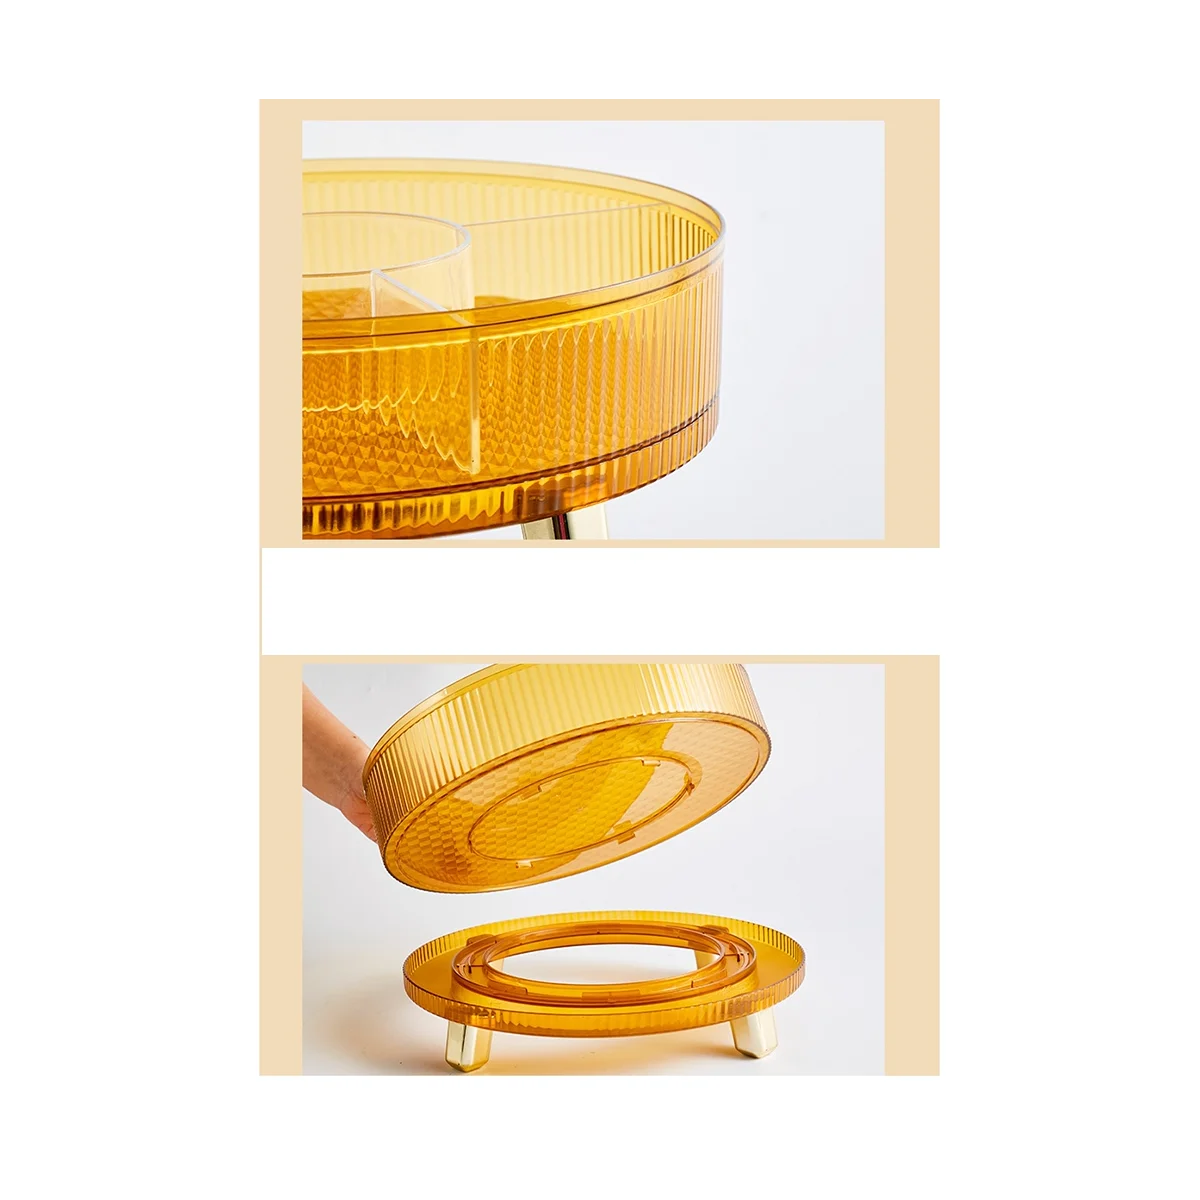 

Трехслойная вращающаяся зернистая чаша высокого качества, домашняя многофункциональная коробка для хранения семян дыни, оранжевого цвета